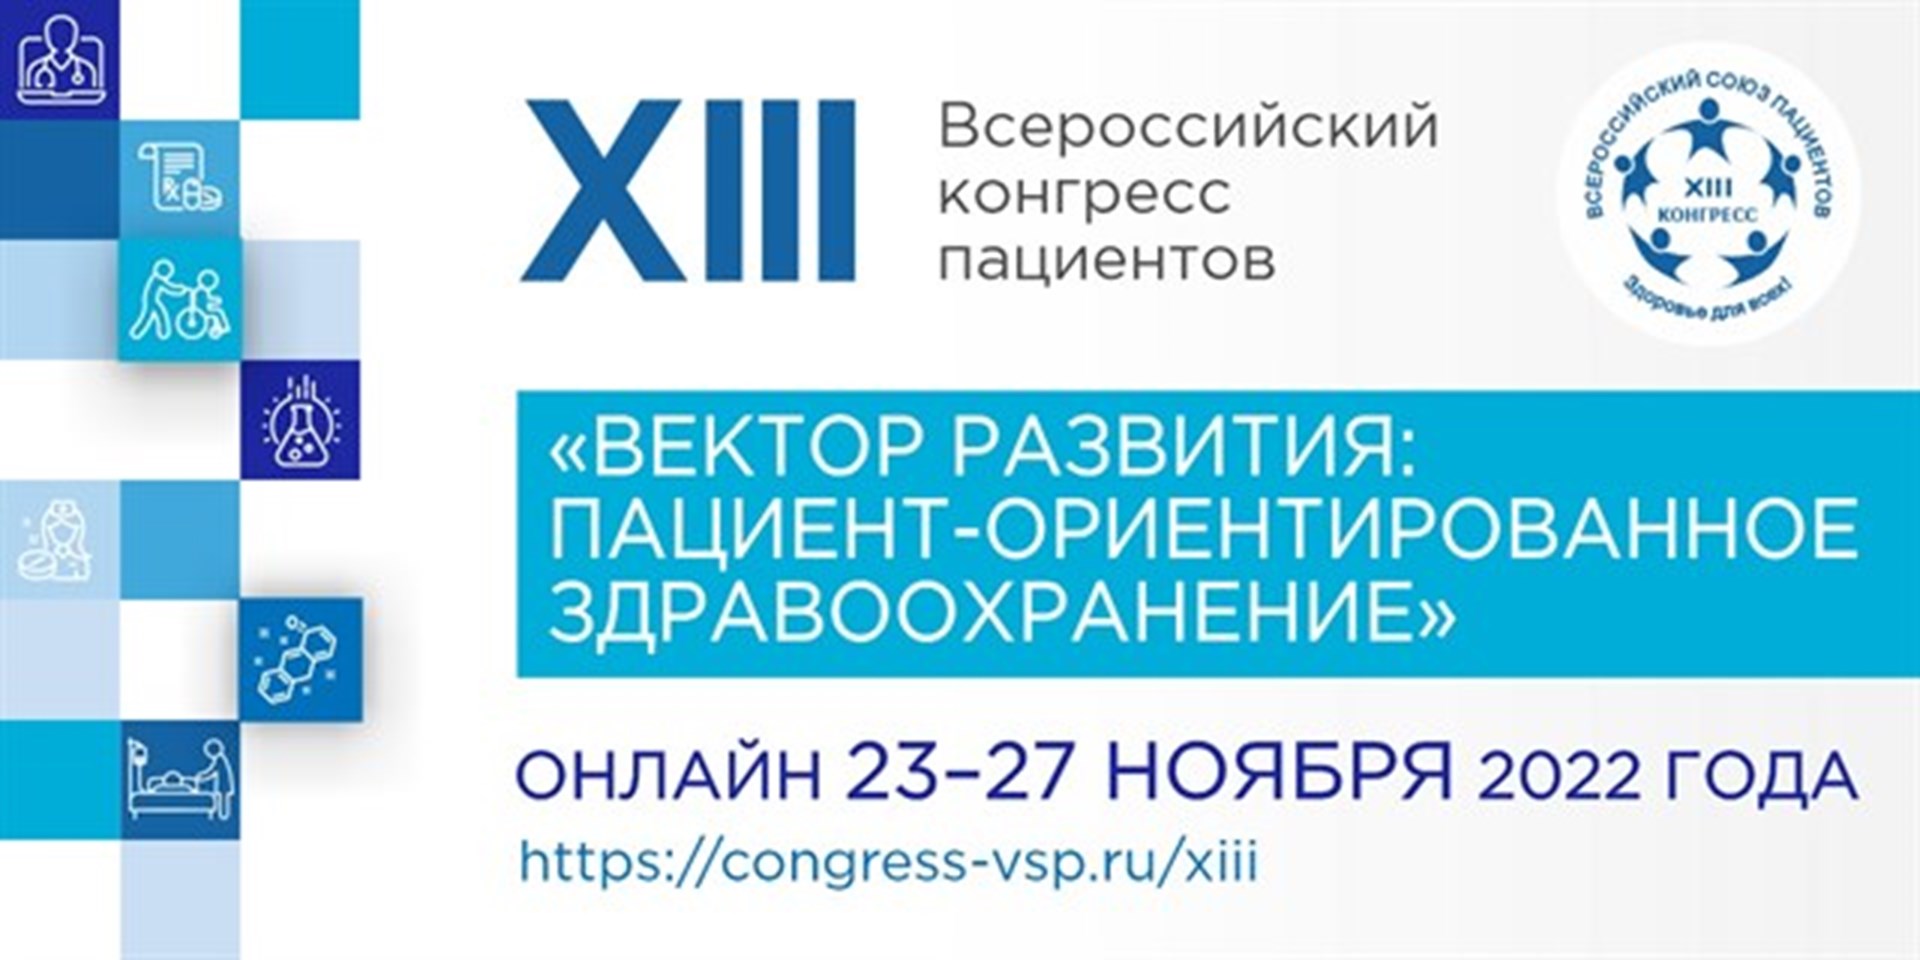 22.11.2022 Завтра начнет свою работу XIII Всероссийский конгресс пациентов